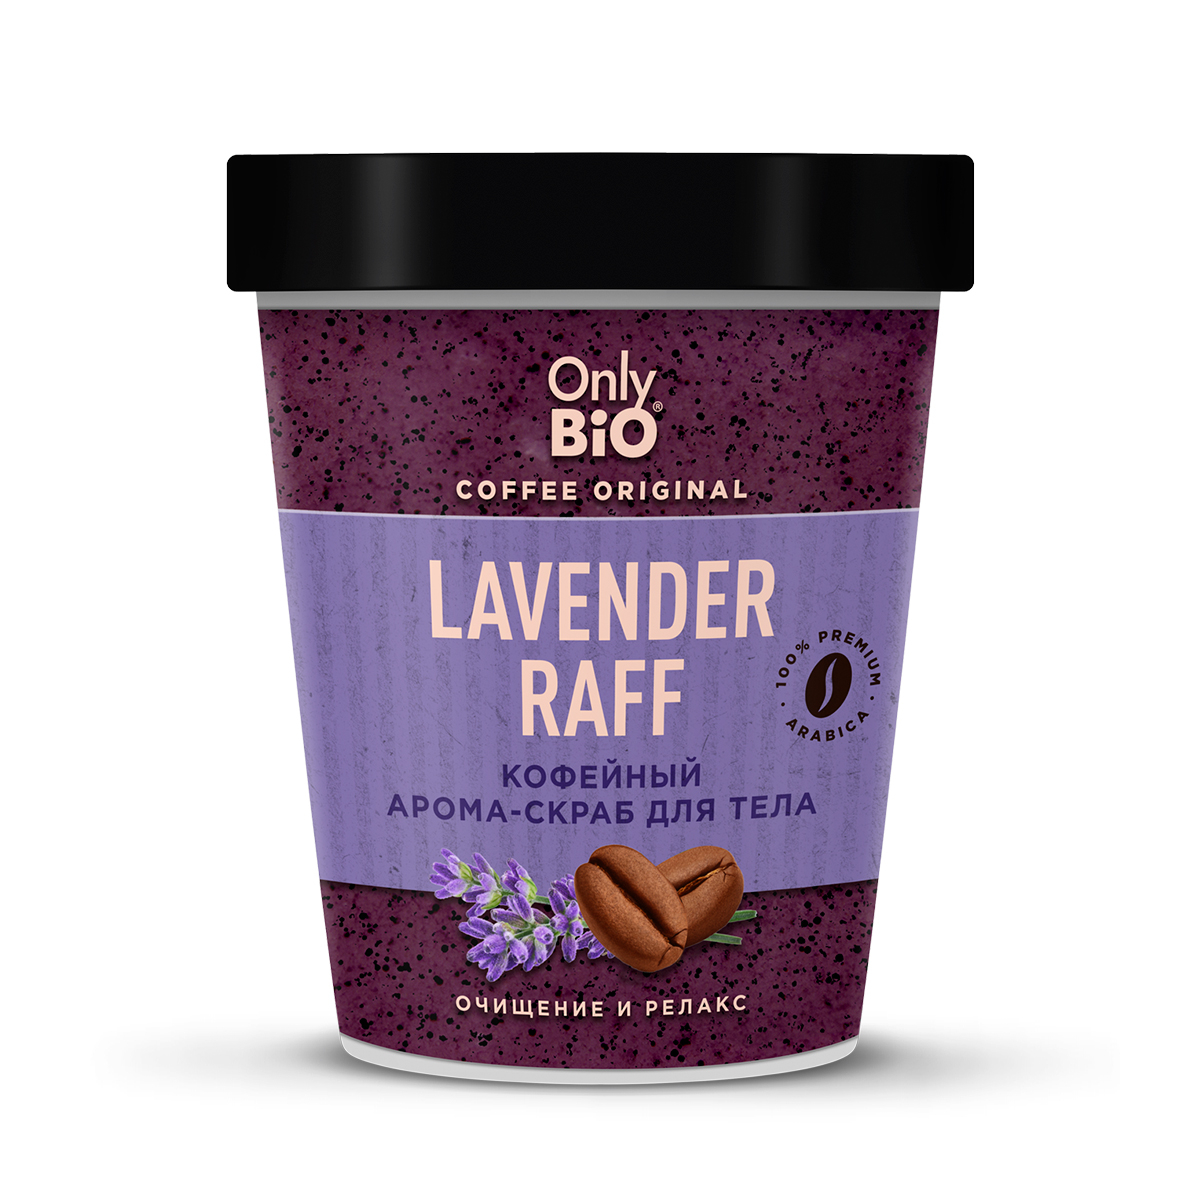 Скраб-арома для тела Only Bio Coffee Original Lavender Raff кофейный, 230 мл savonry скраб кофейный для тела оригинальный 200